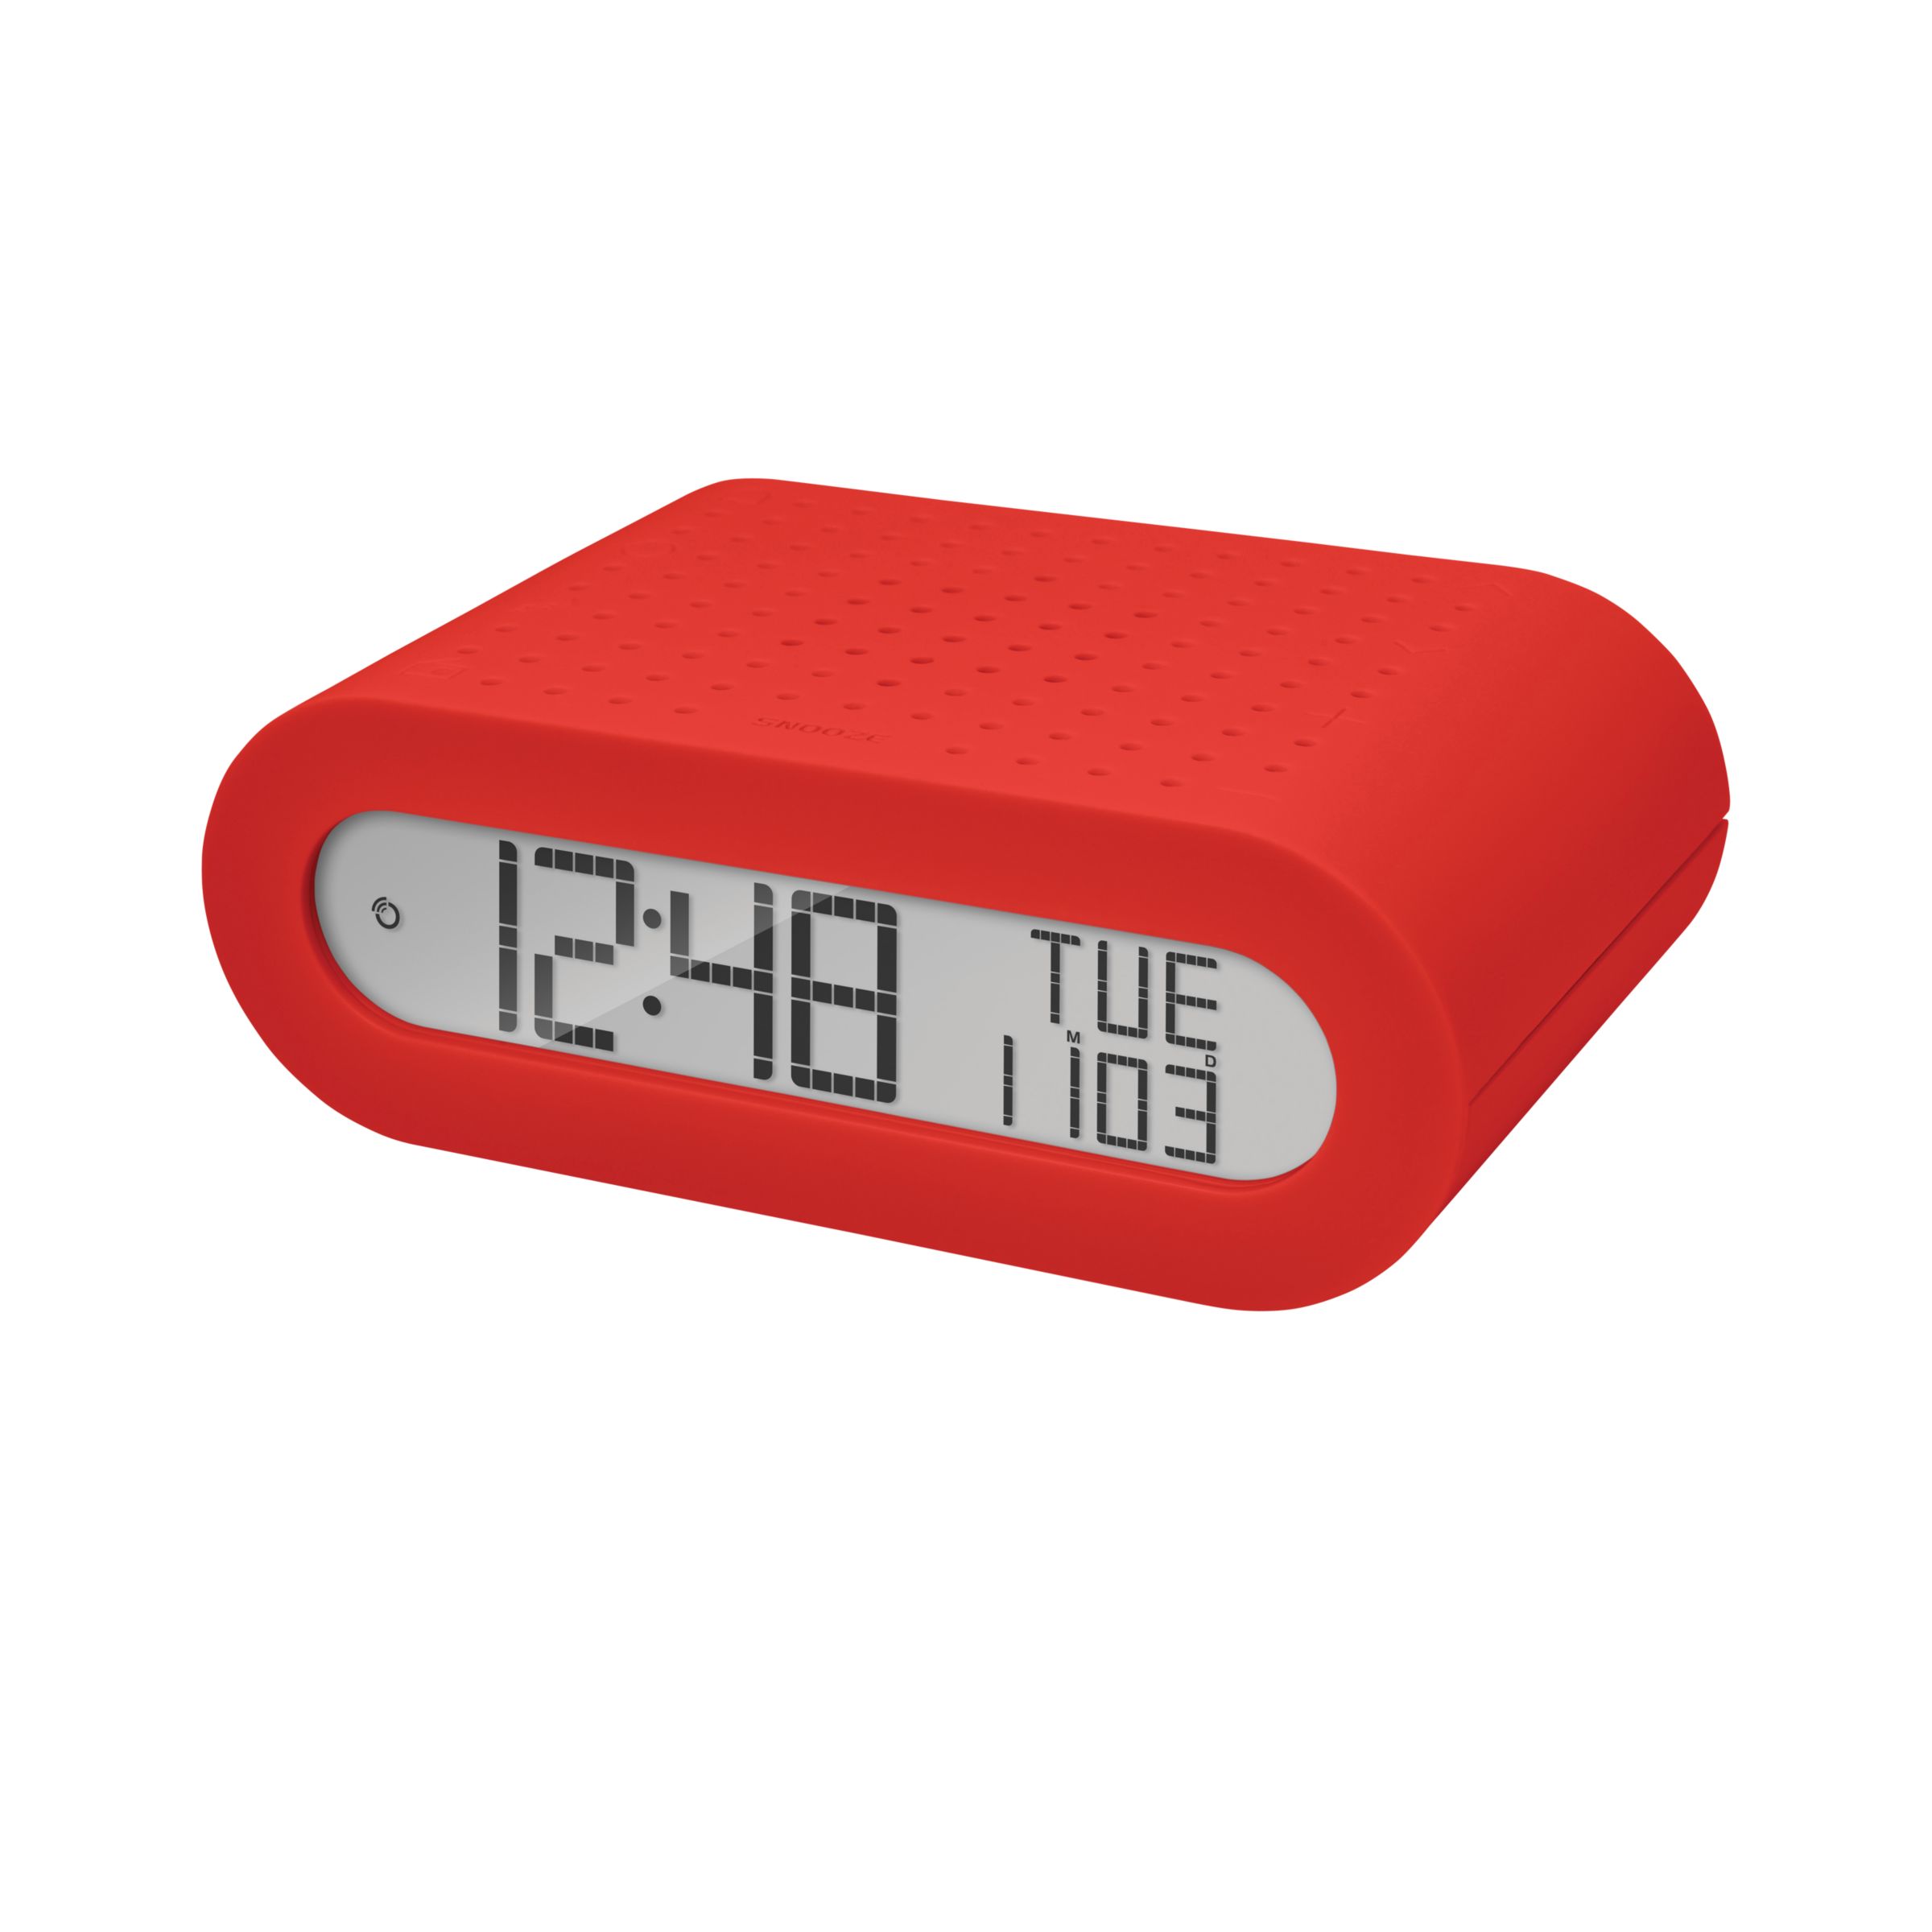 Oregon Scientific Classic Digital Alarm Clock With FM Radio